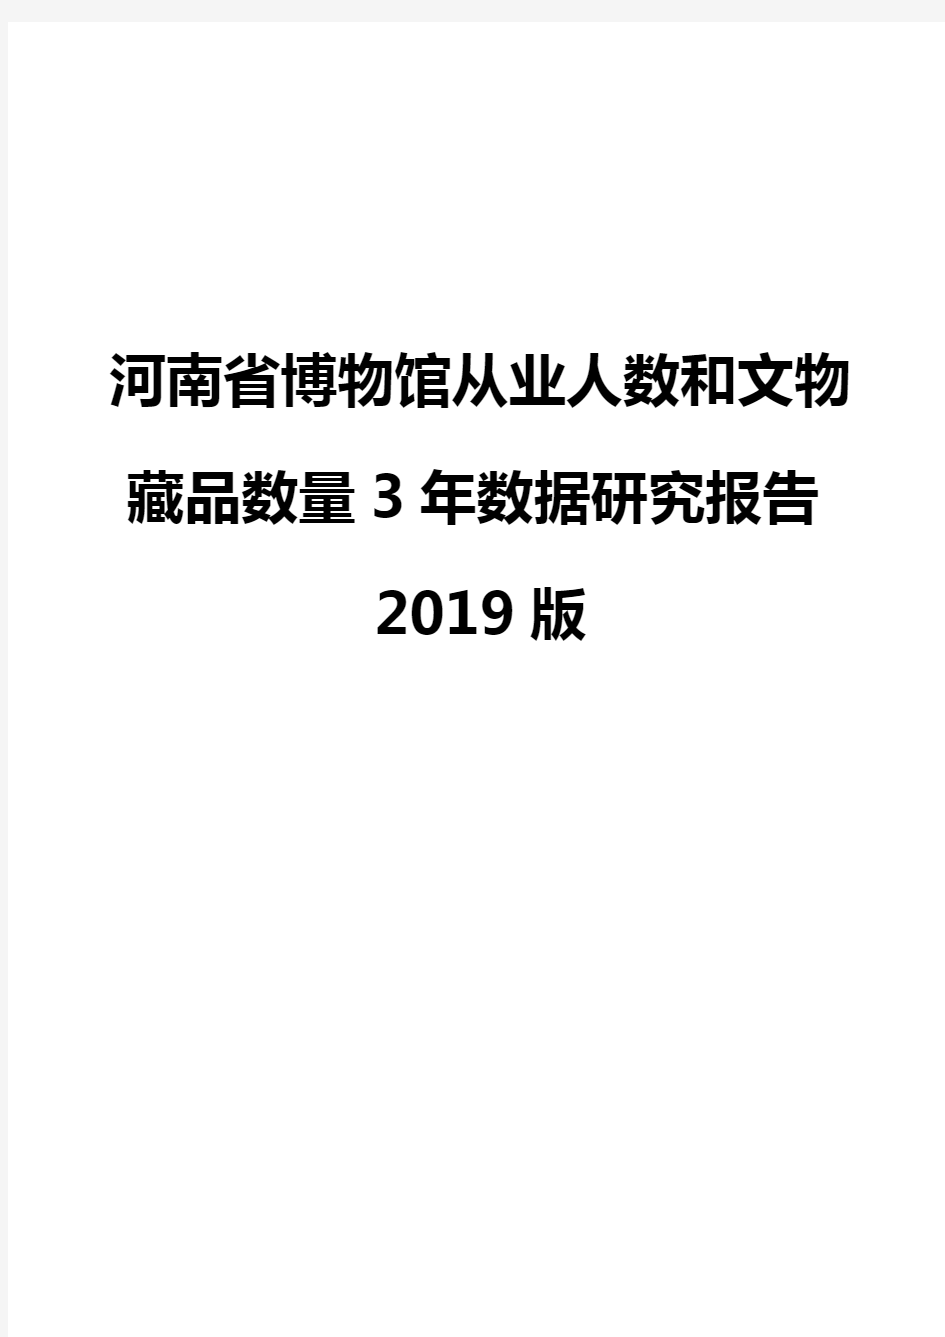 河南省博物馆从业人数和文物藏品数量3年数据研究报告2019版